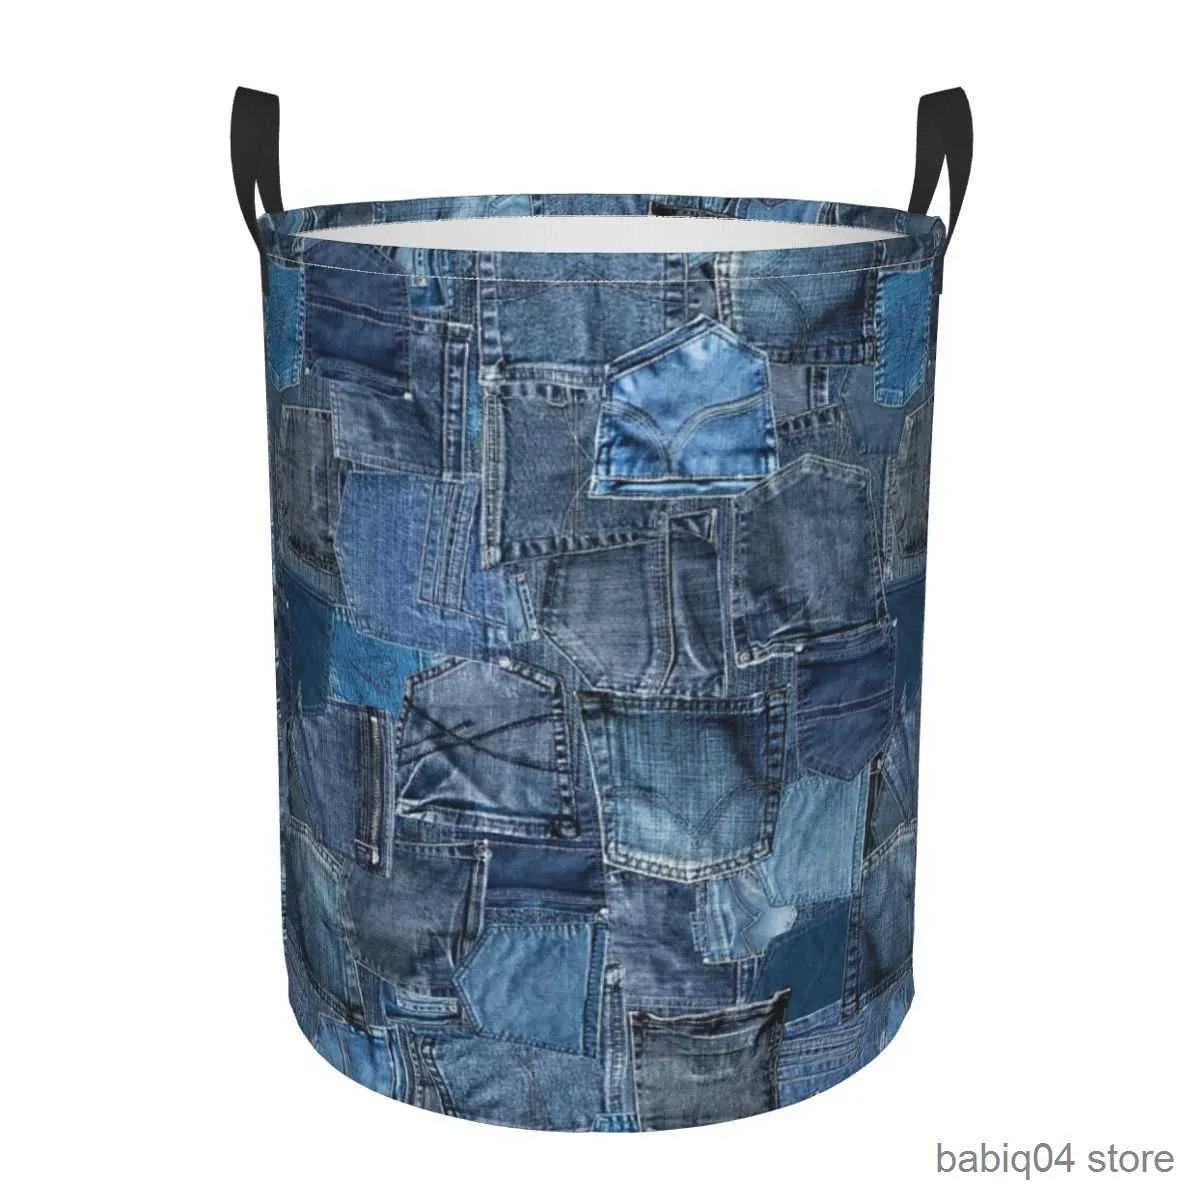 Cestini portaoggetti Jeans in denim blu Tasca patchwork Cestini per biancheria pieghevoli Cestino portaoggetti per articoli vari sporchi Organizzatore per la casa Grande cesto impermeabile